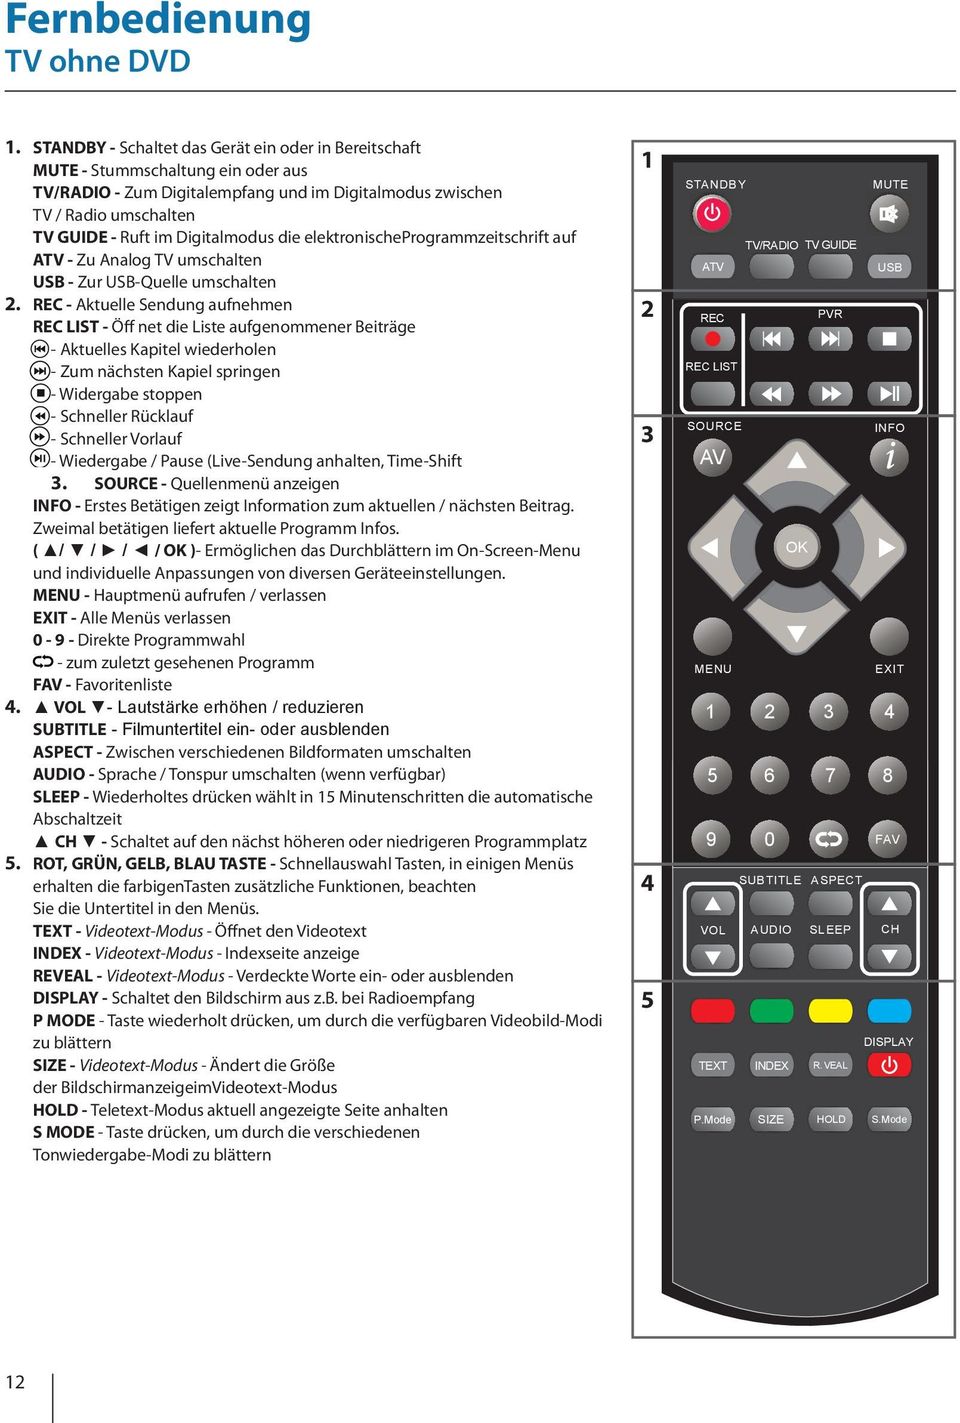 Digitalmodus die elektronischeprogrammzeitschrift auf ATV - Zu Analog TV umschalten USB - Zur USB-Quelle umschalten 2.